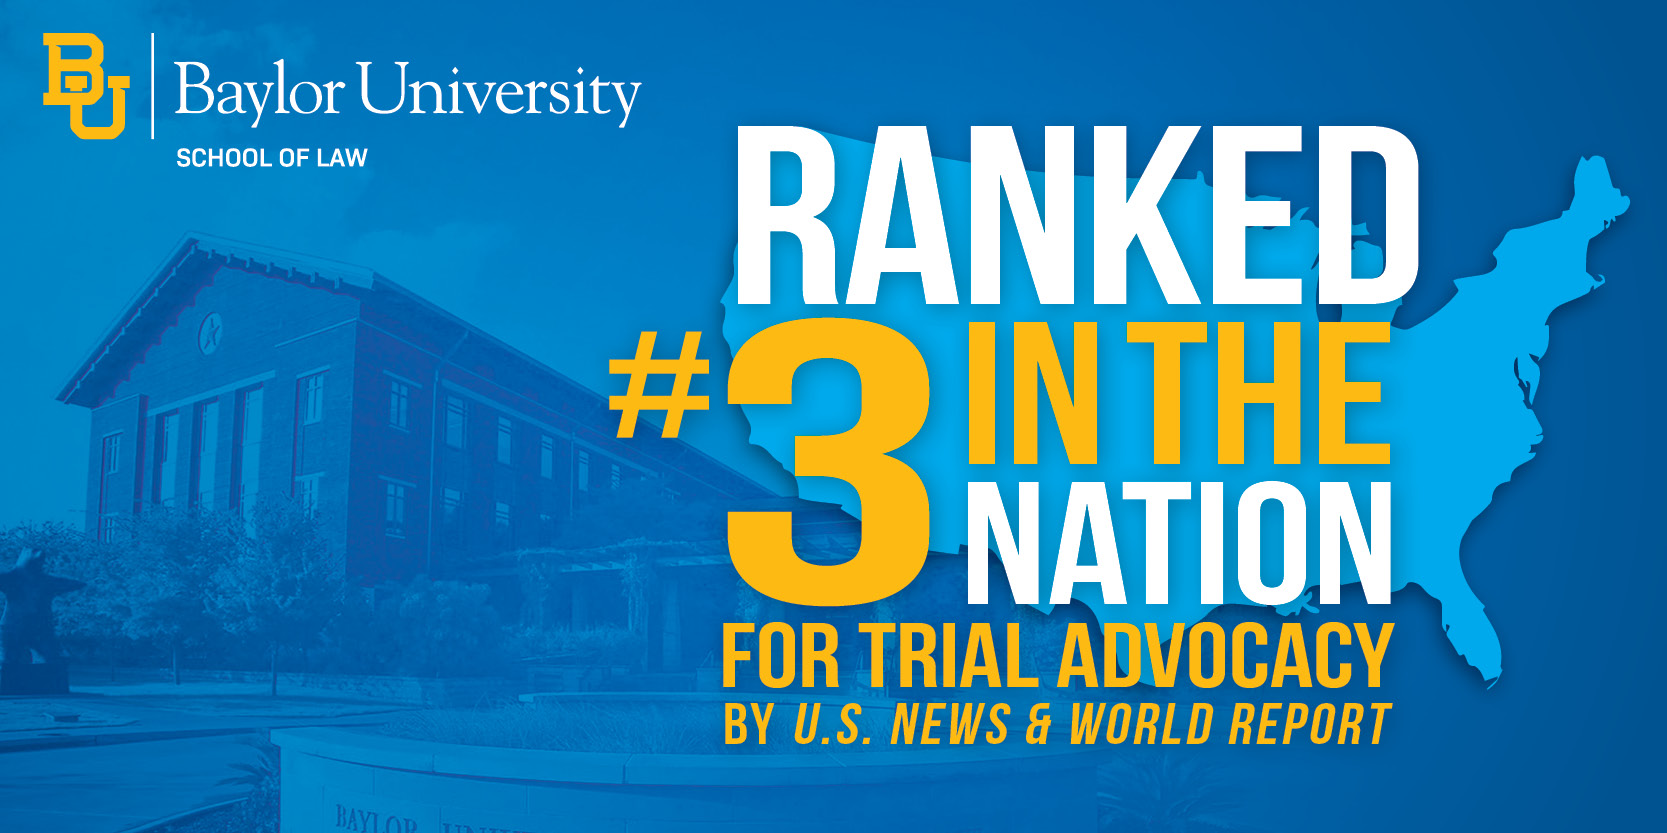 #3 Trial Advocacy - U.S. News